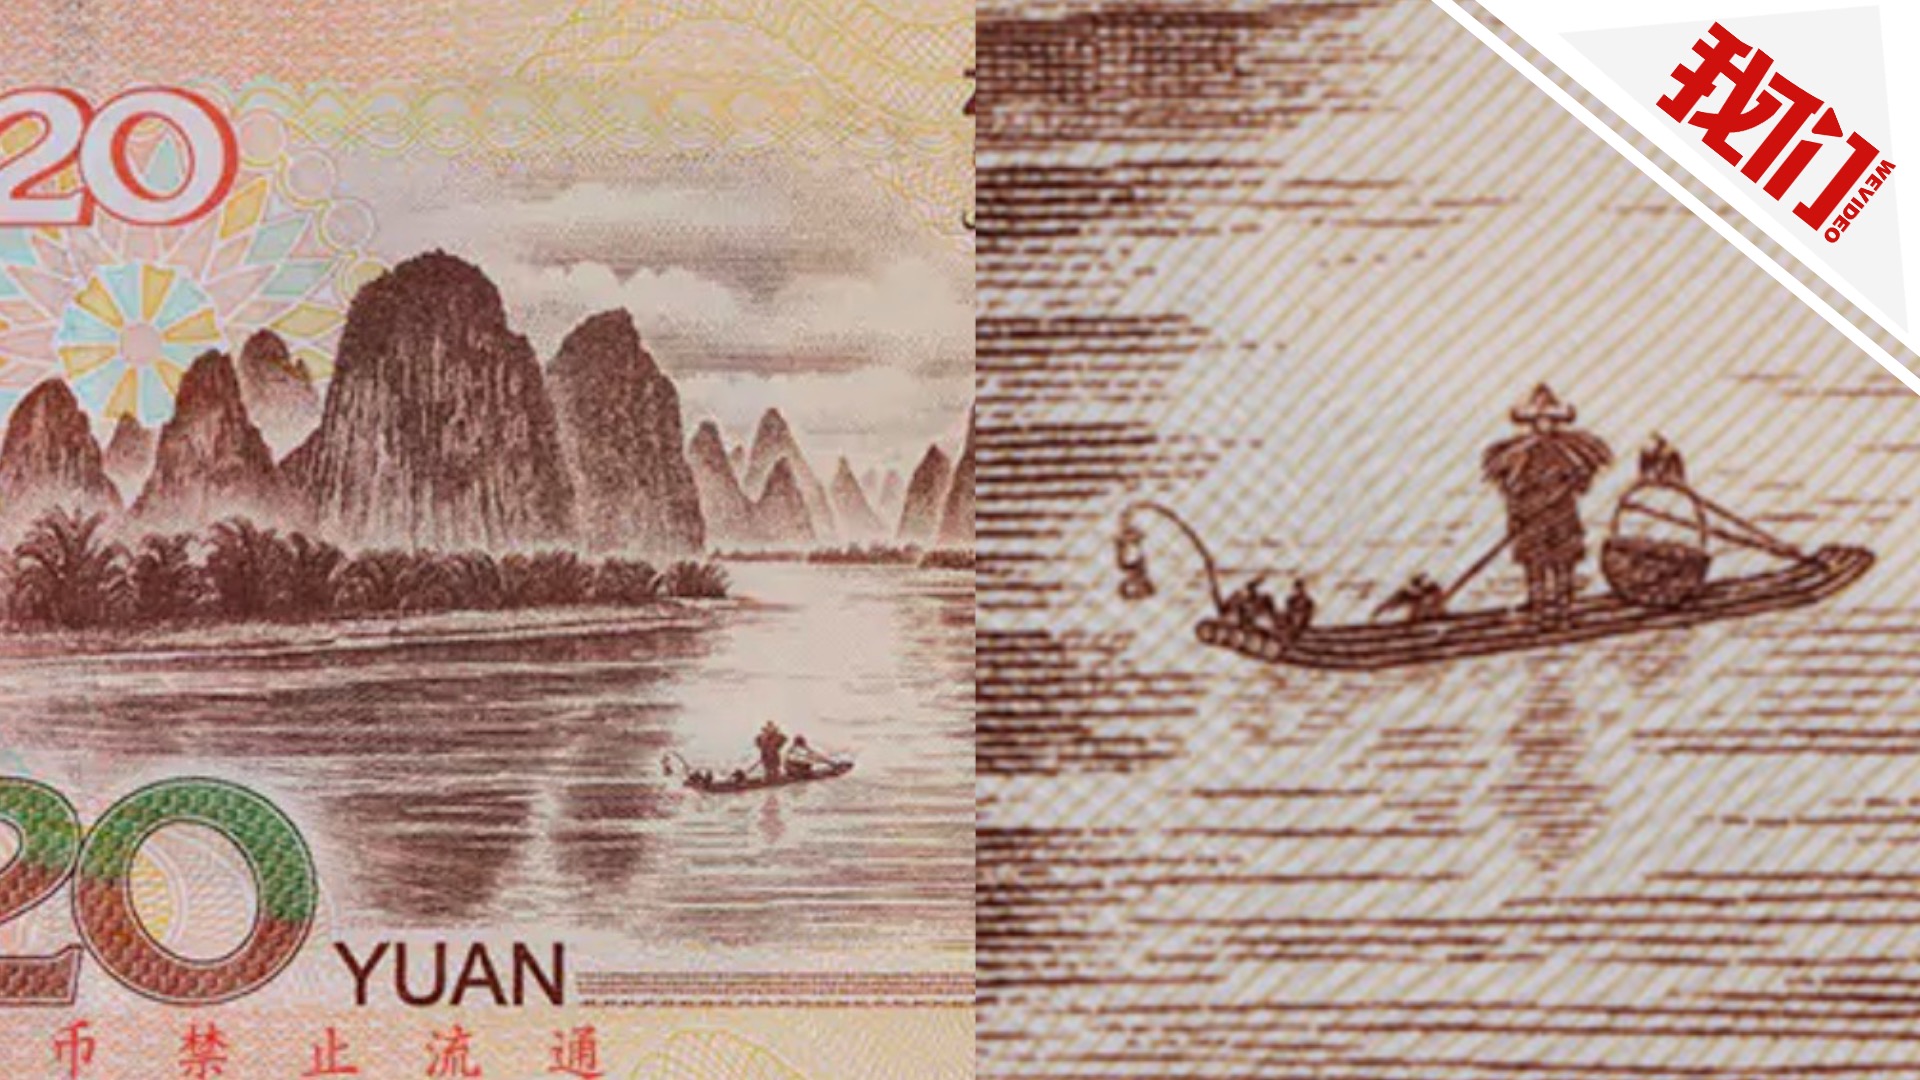 20元人民币壁纸图片